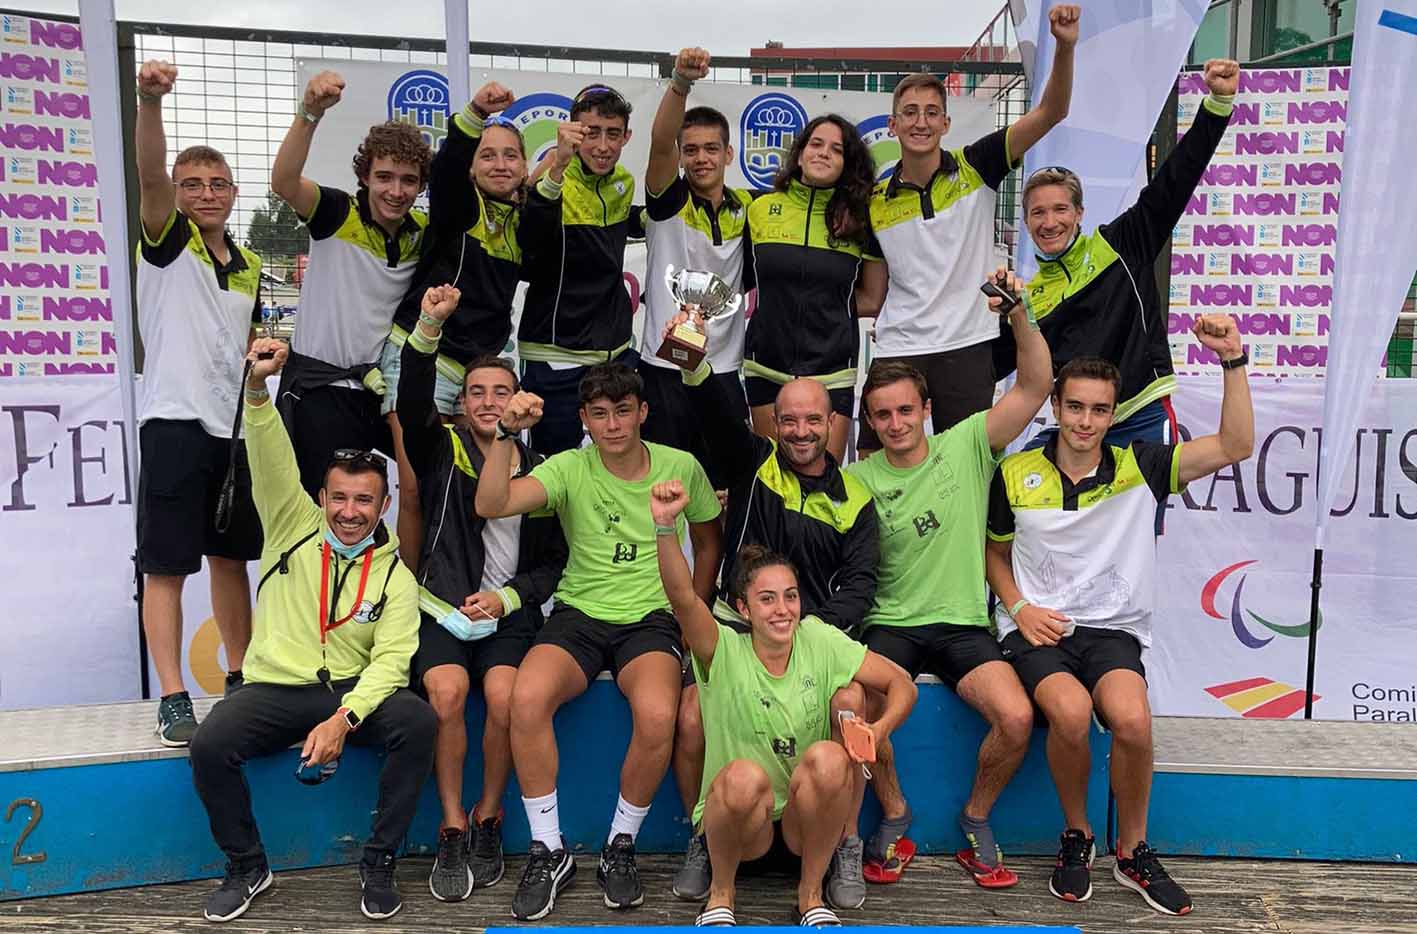 El Club Cuenca Con Carácter, subcampeón de España en "short race"